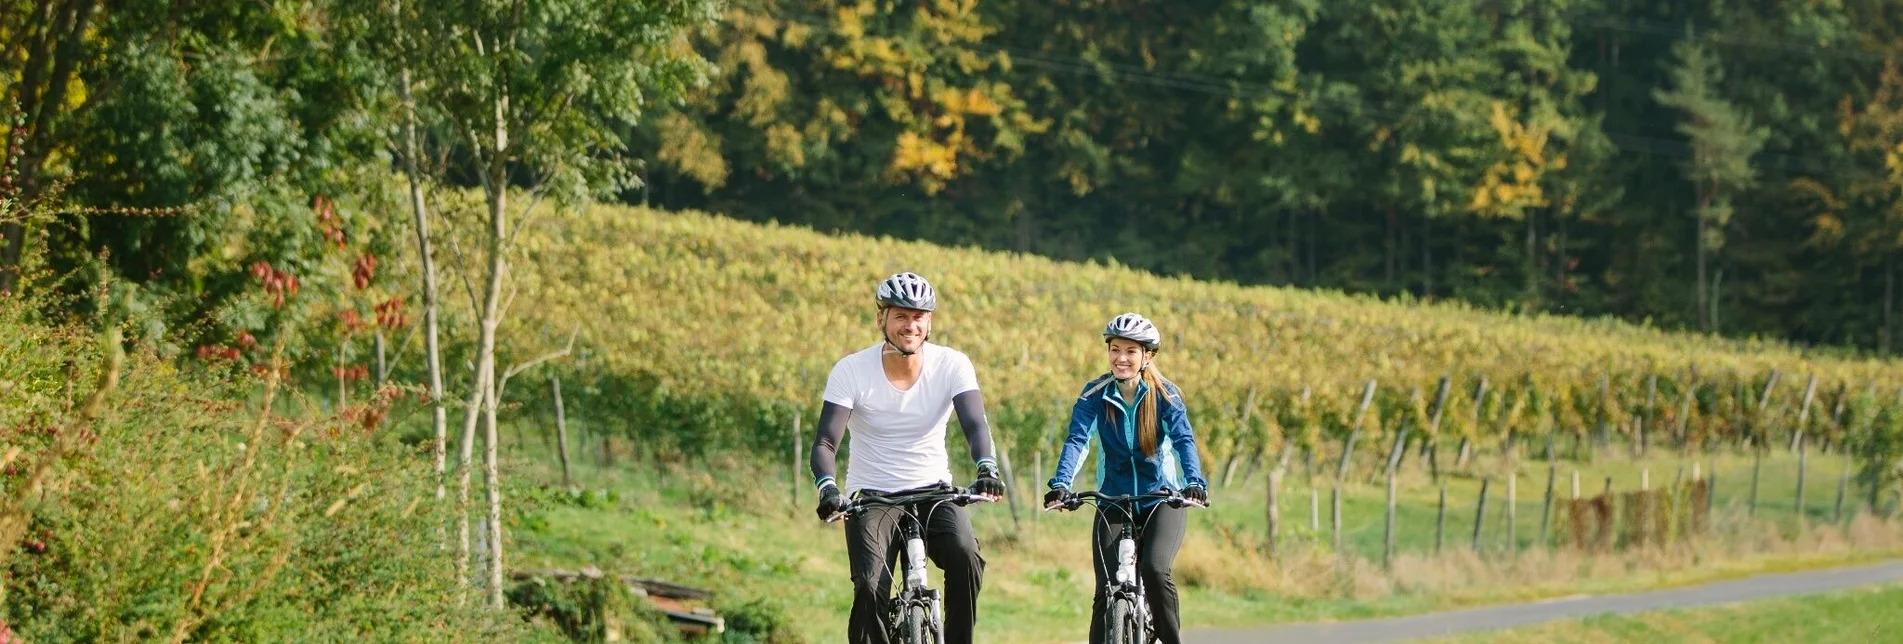 Road Cycling Apfelland Tour - Touren-Impression #1 | © Oststeiermark Tourismus